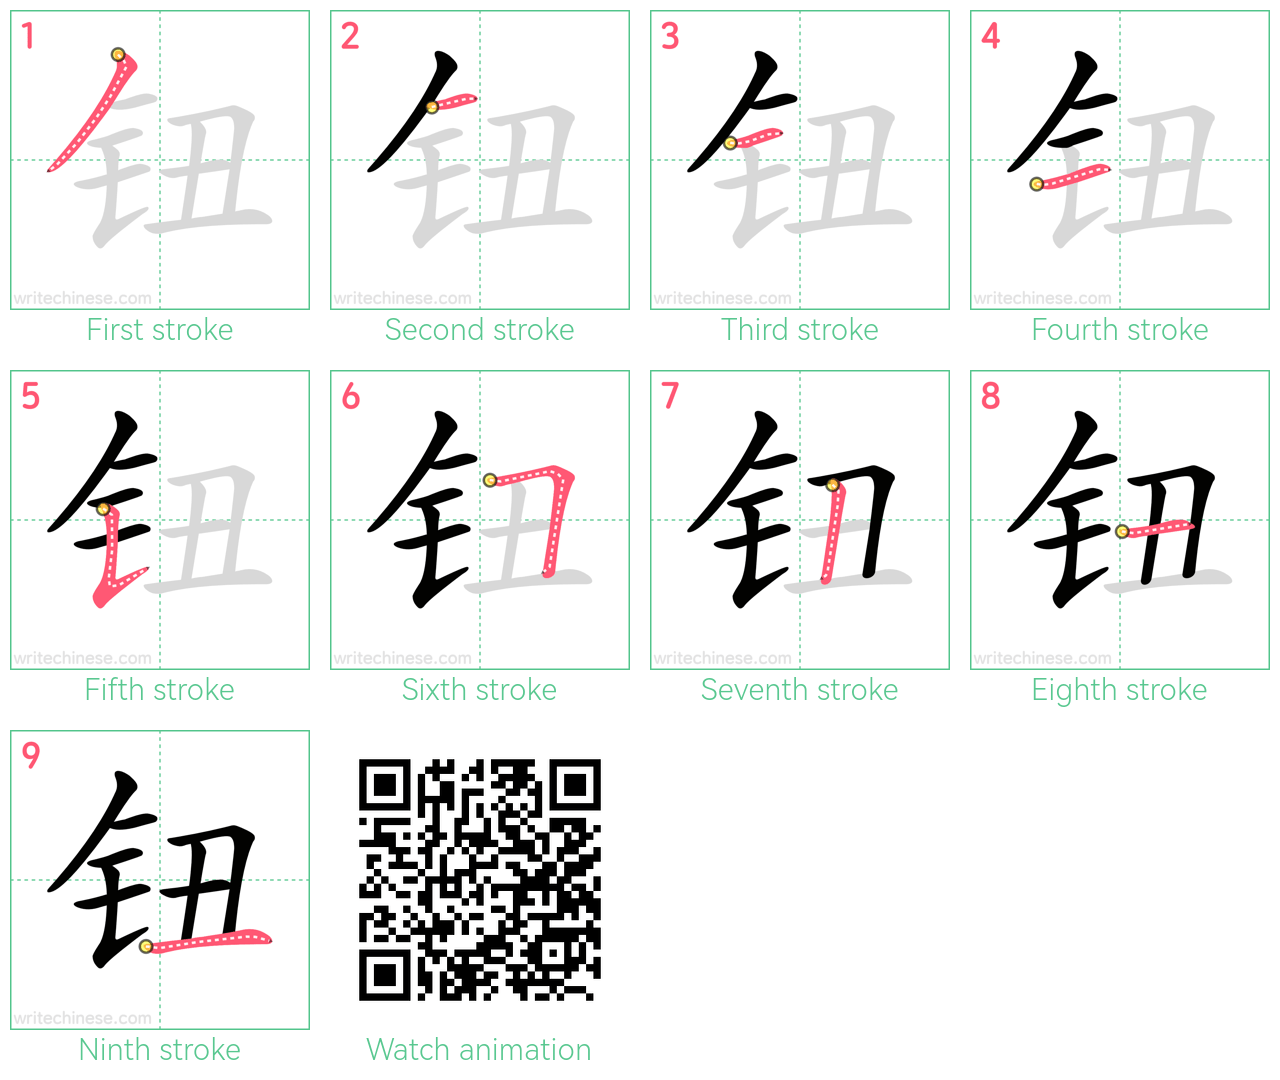 钮 step-by-step stroke order diagrams